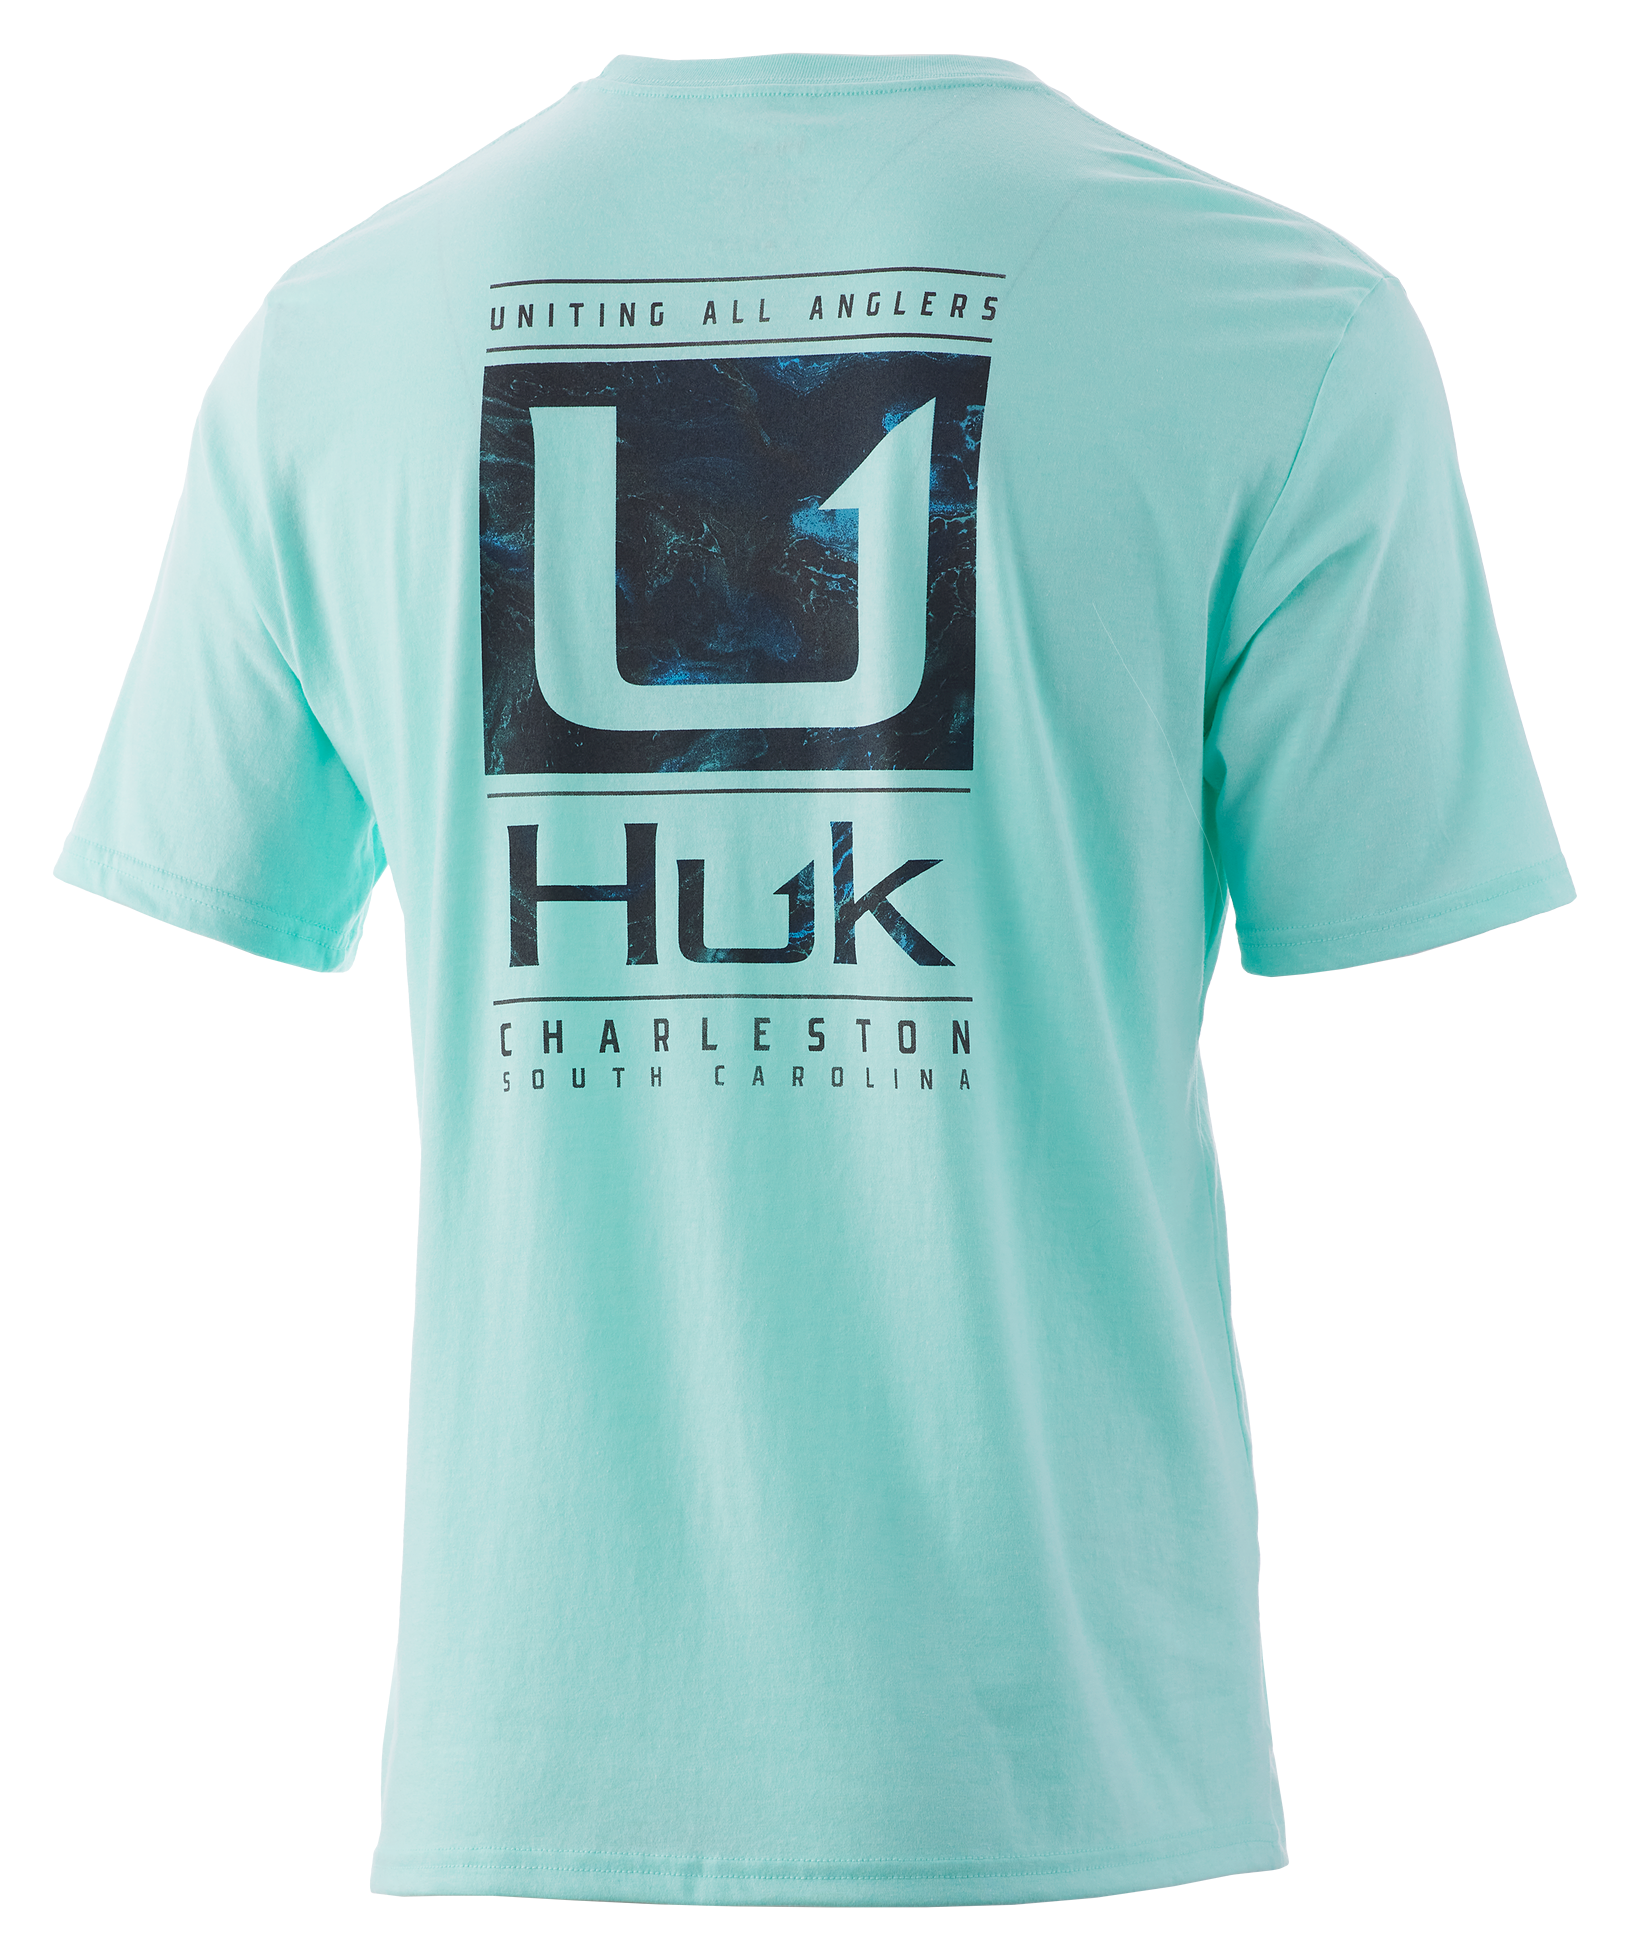 Huk Made Angler Short-Sleeve T-Shirt for Men